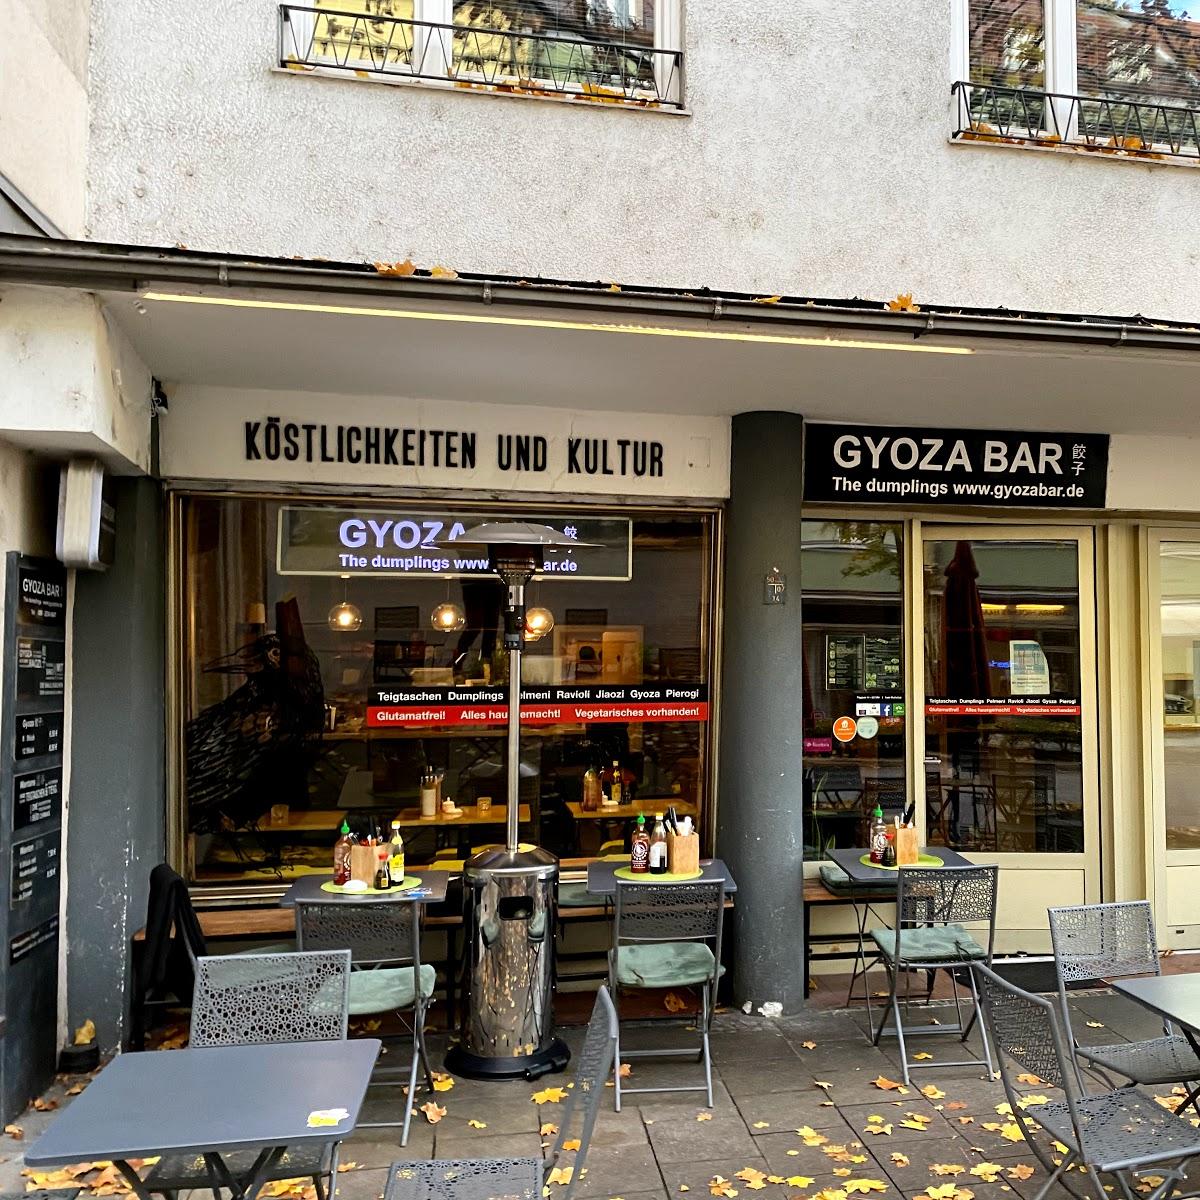 Restaurant "Gyoza Bar" in München